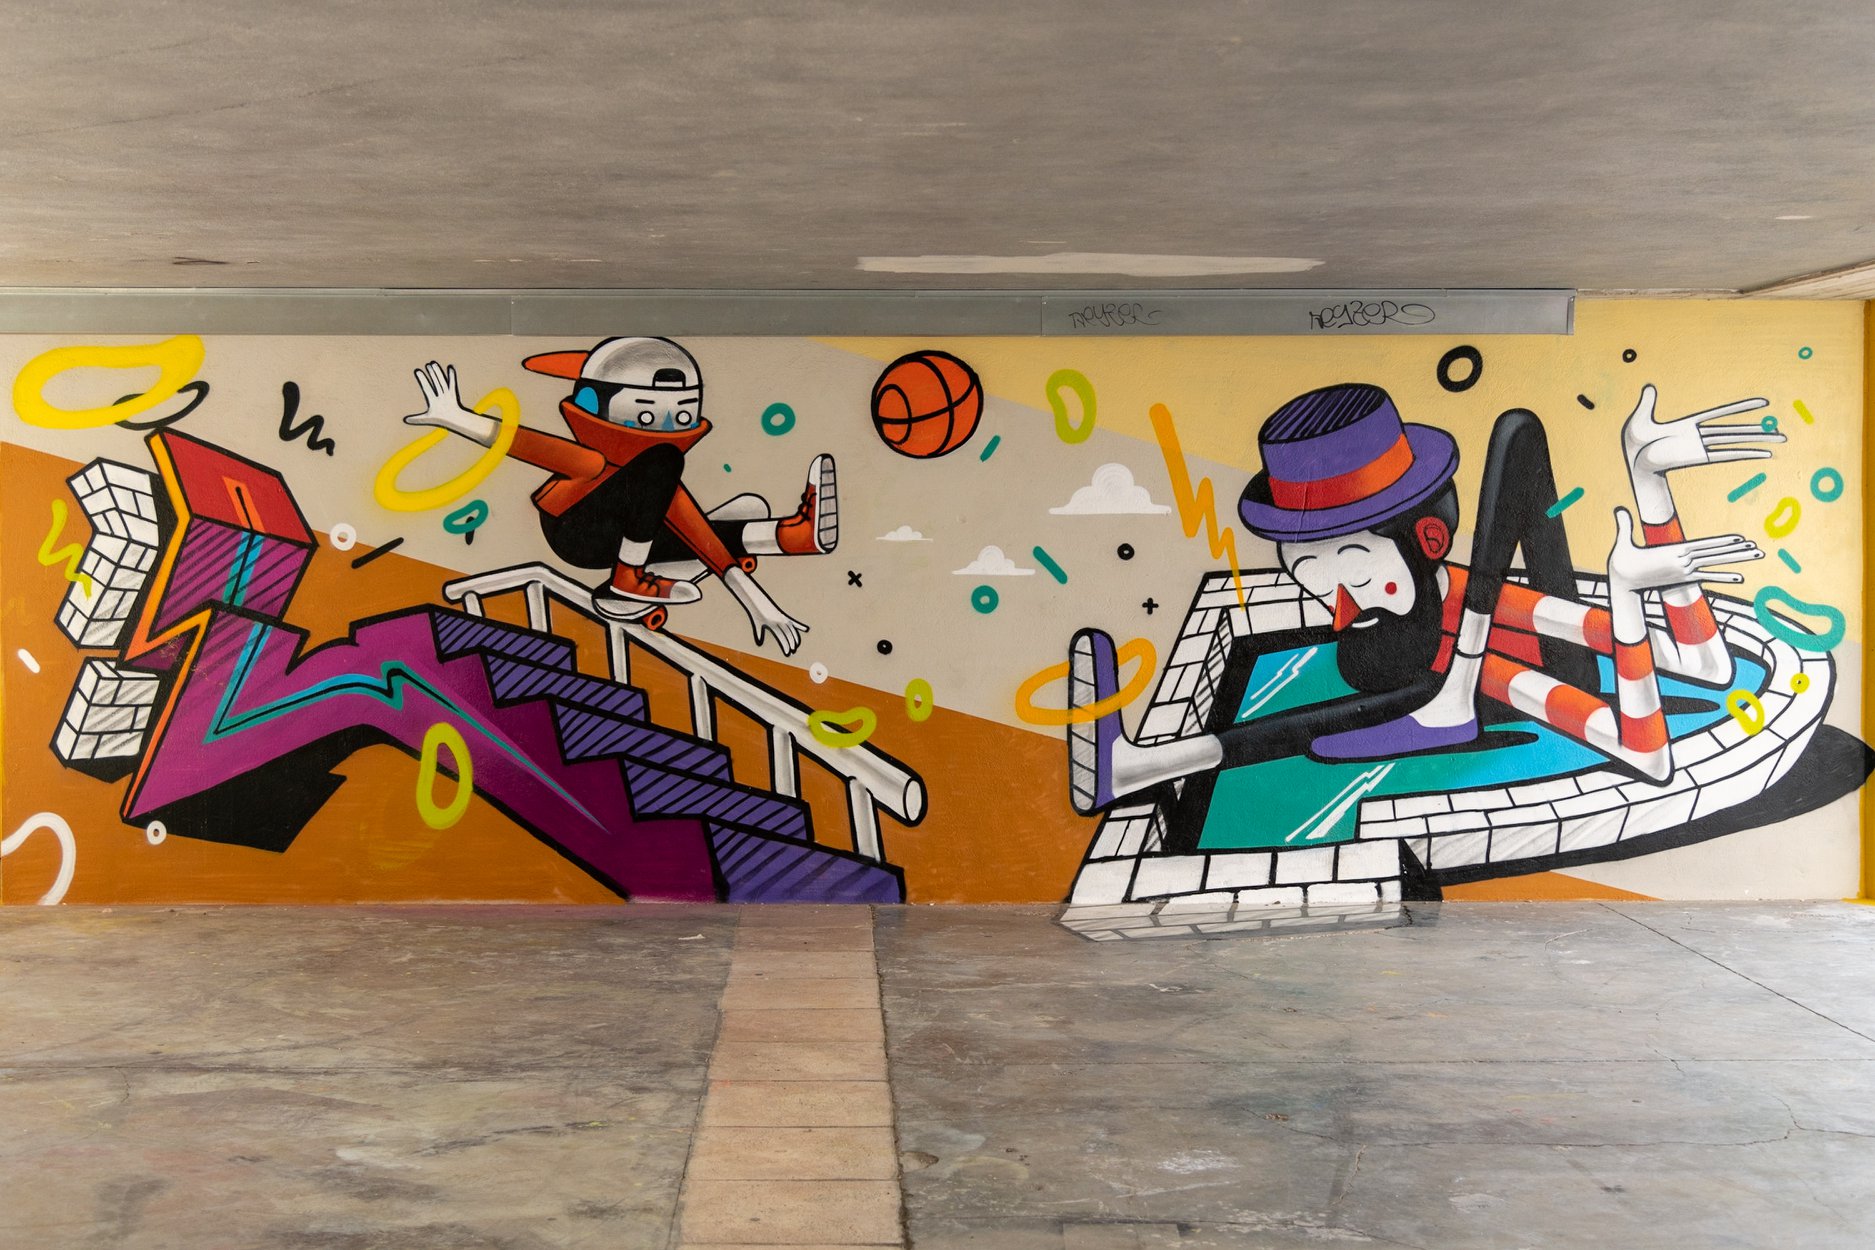 Matera 2019, il 14 passeggiata nell’arte urbana